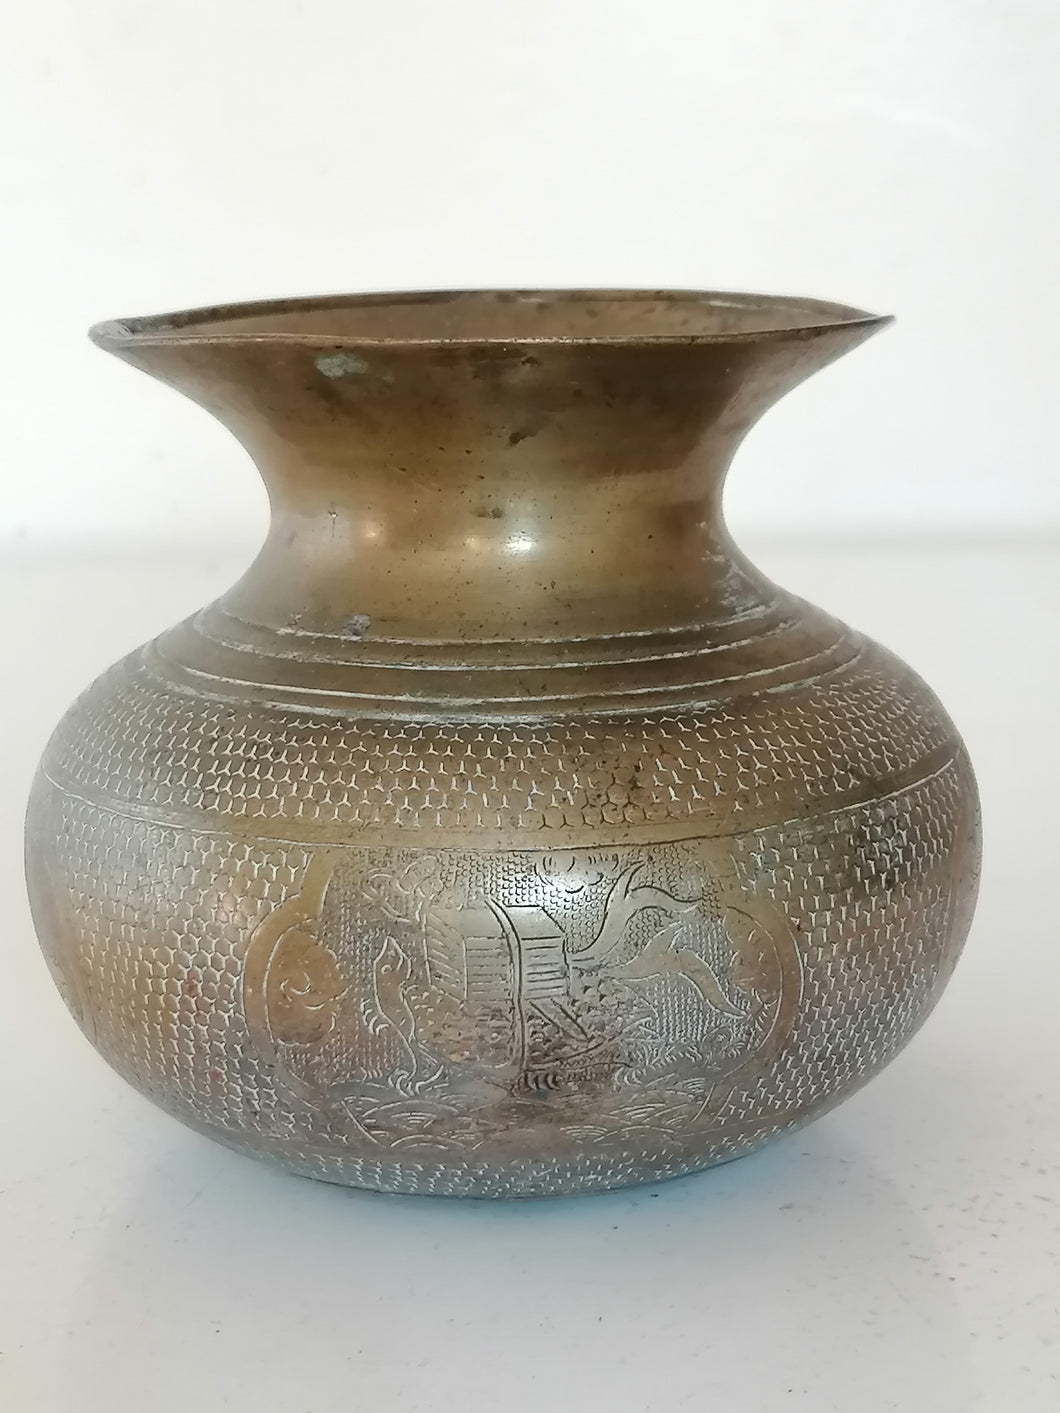 Vase en bronze Asie, région Chine, décors animaux mythologiques, je dirais fin 18ème